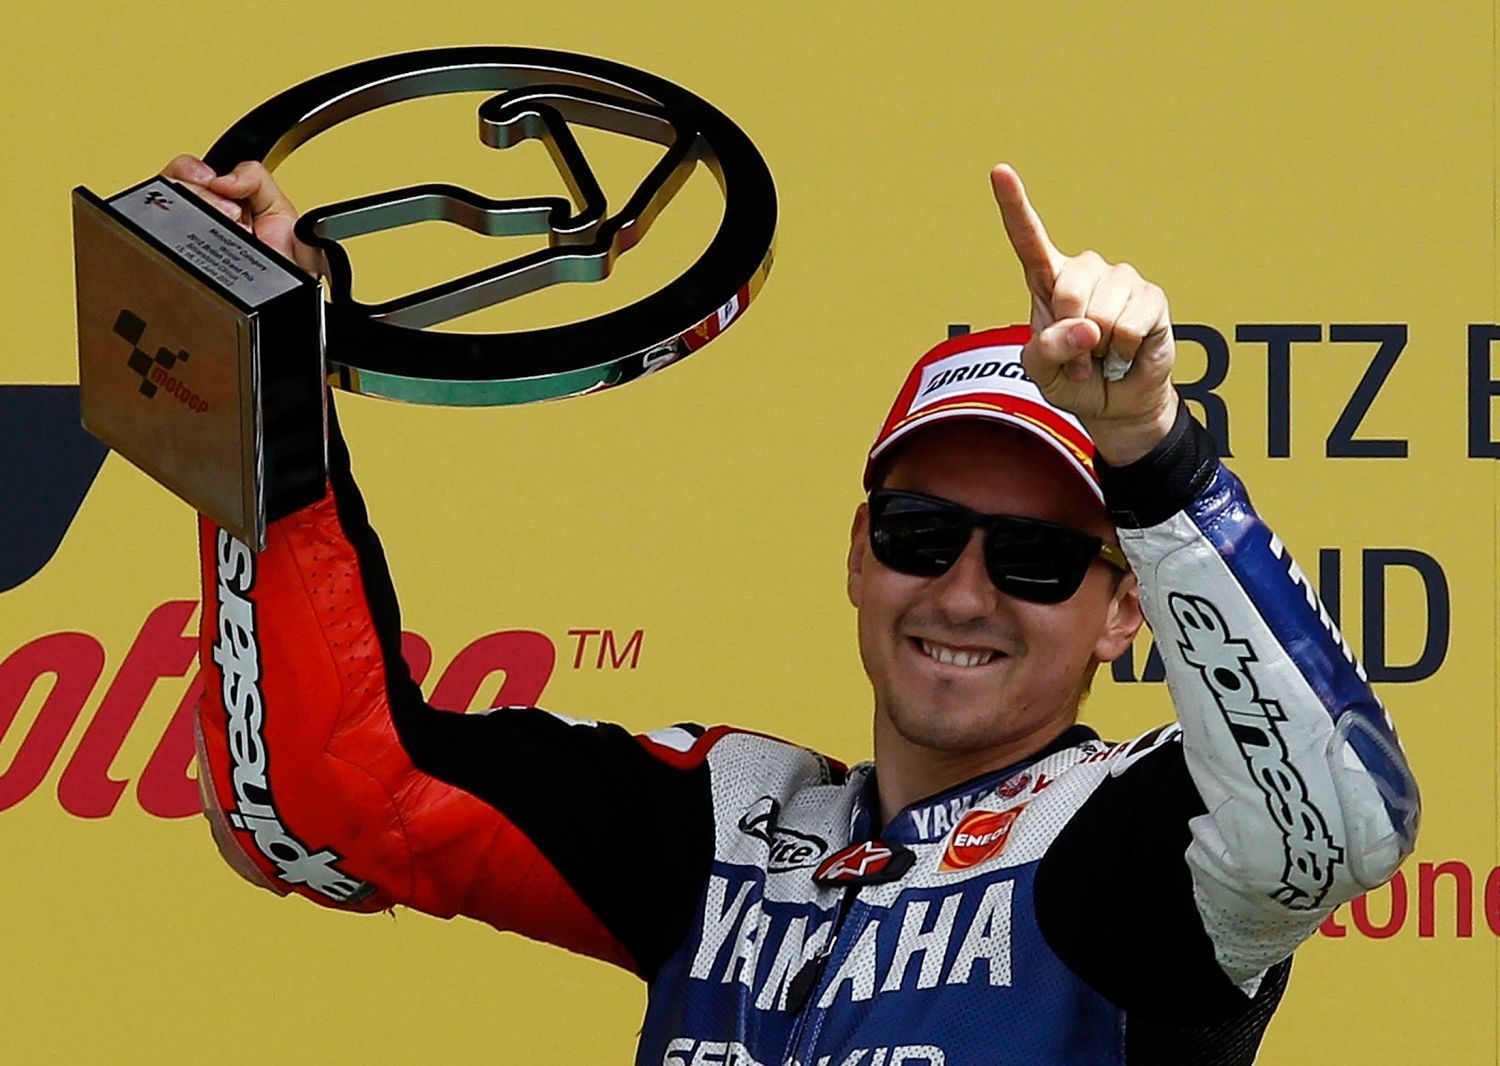 Španělský jezdec Yamahy v MotoGP Jorge Lorenzo se raduje z vítězství ve Velké ceně Velké Británie